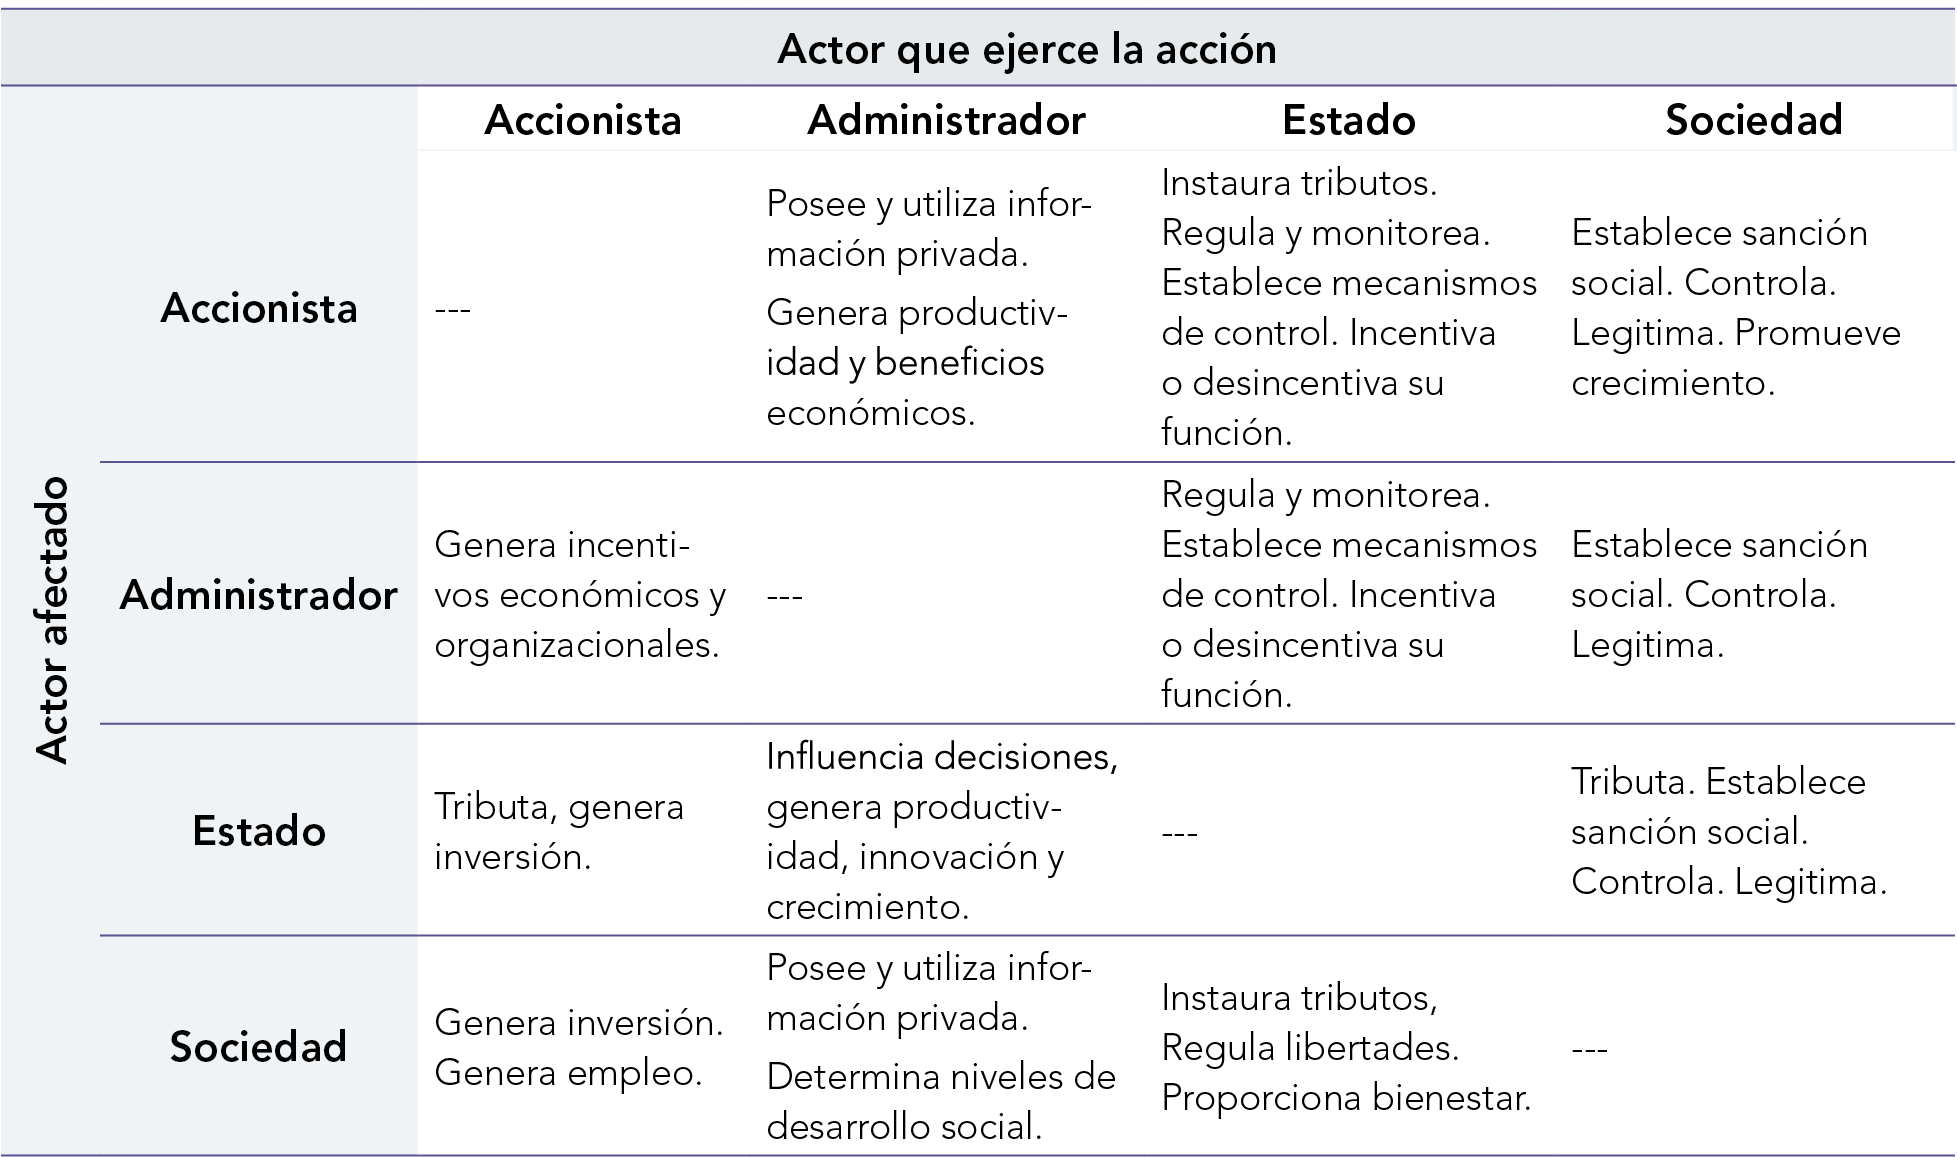 Principales interacciones entre actores